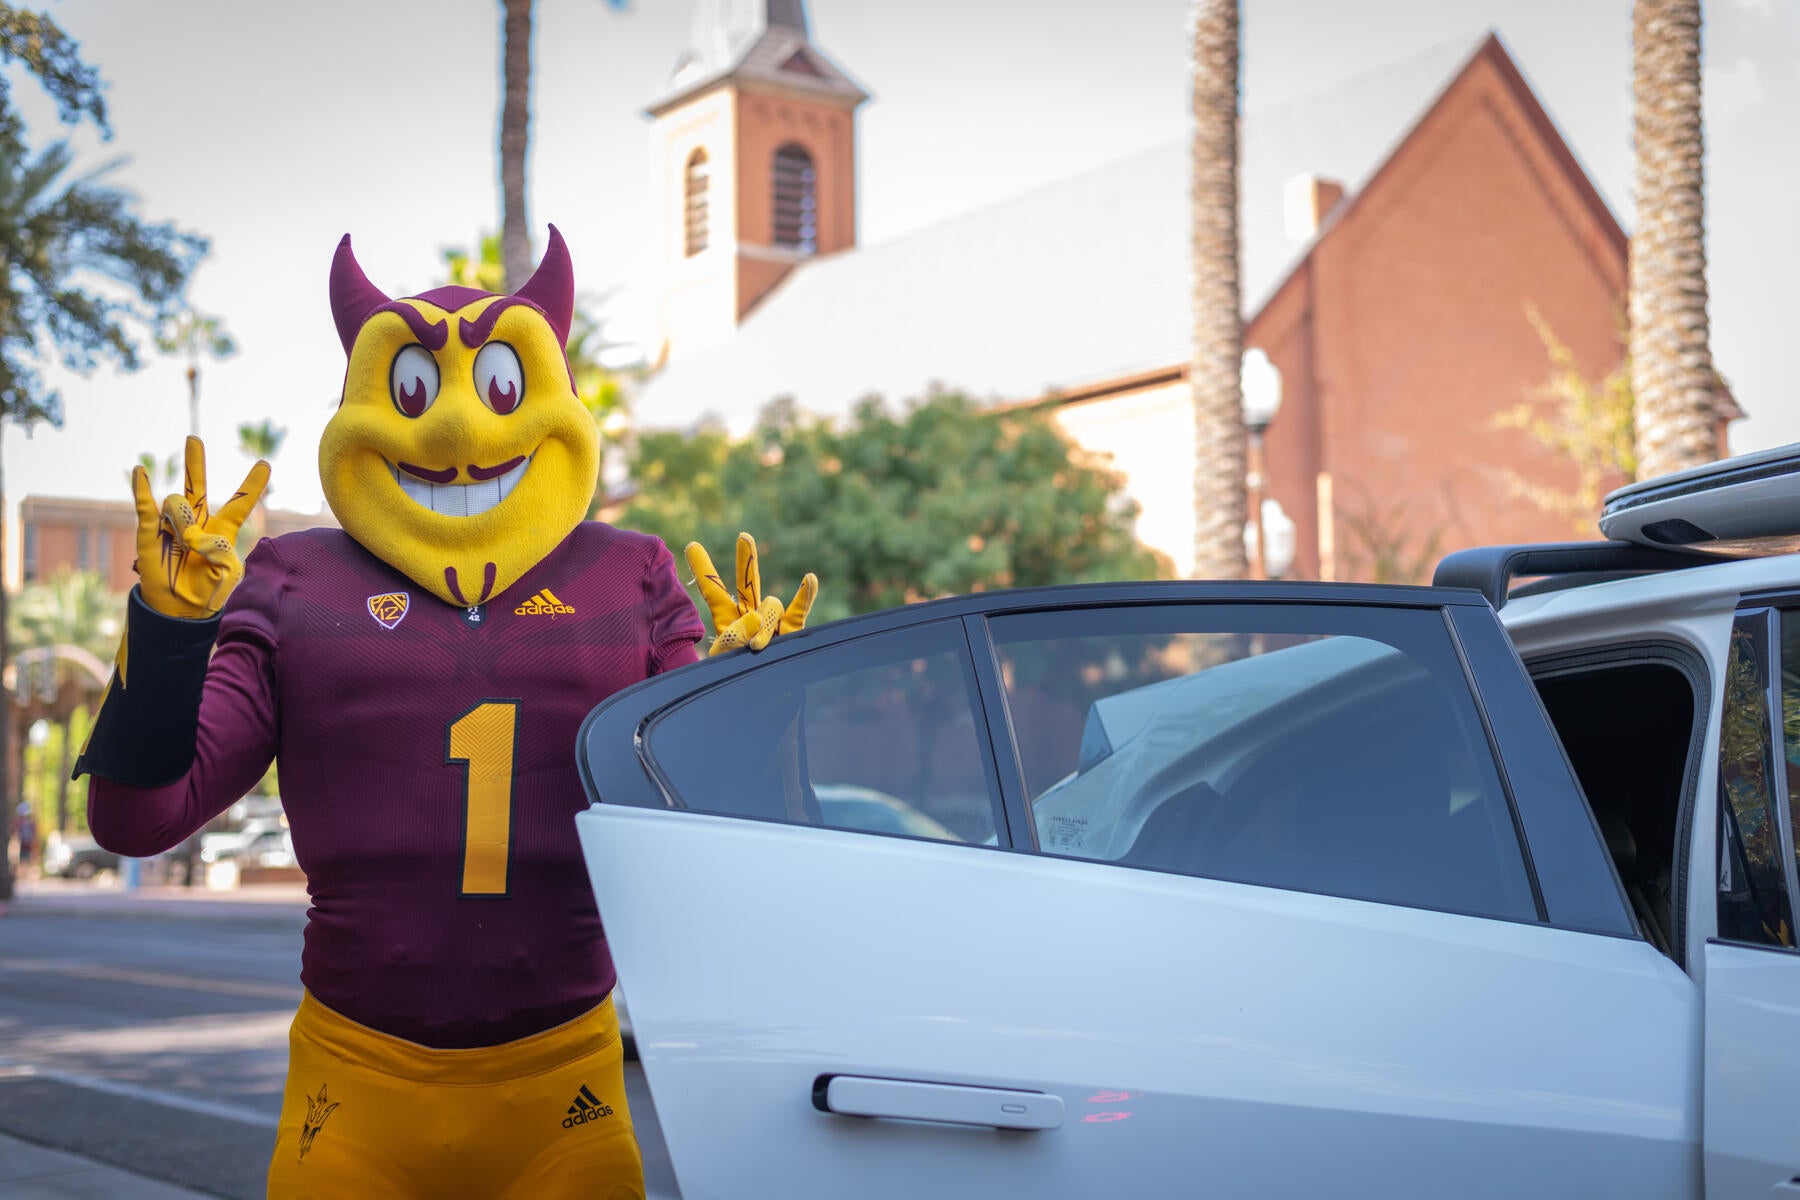 Soarky mascot standing with car door open